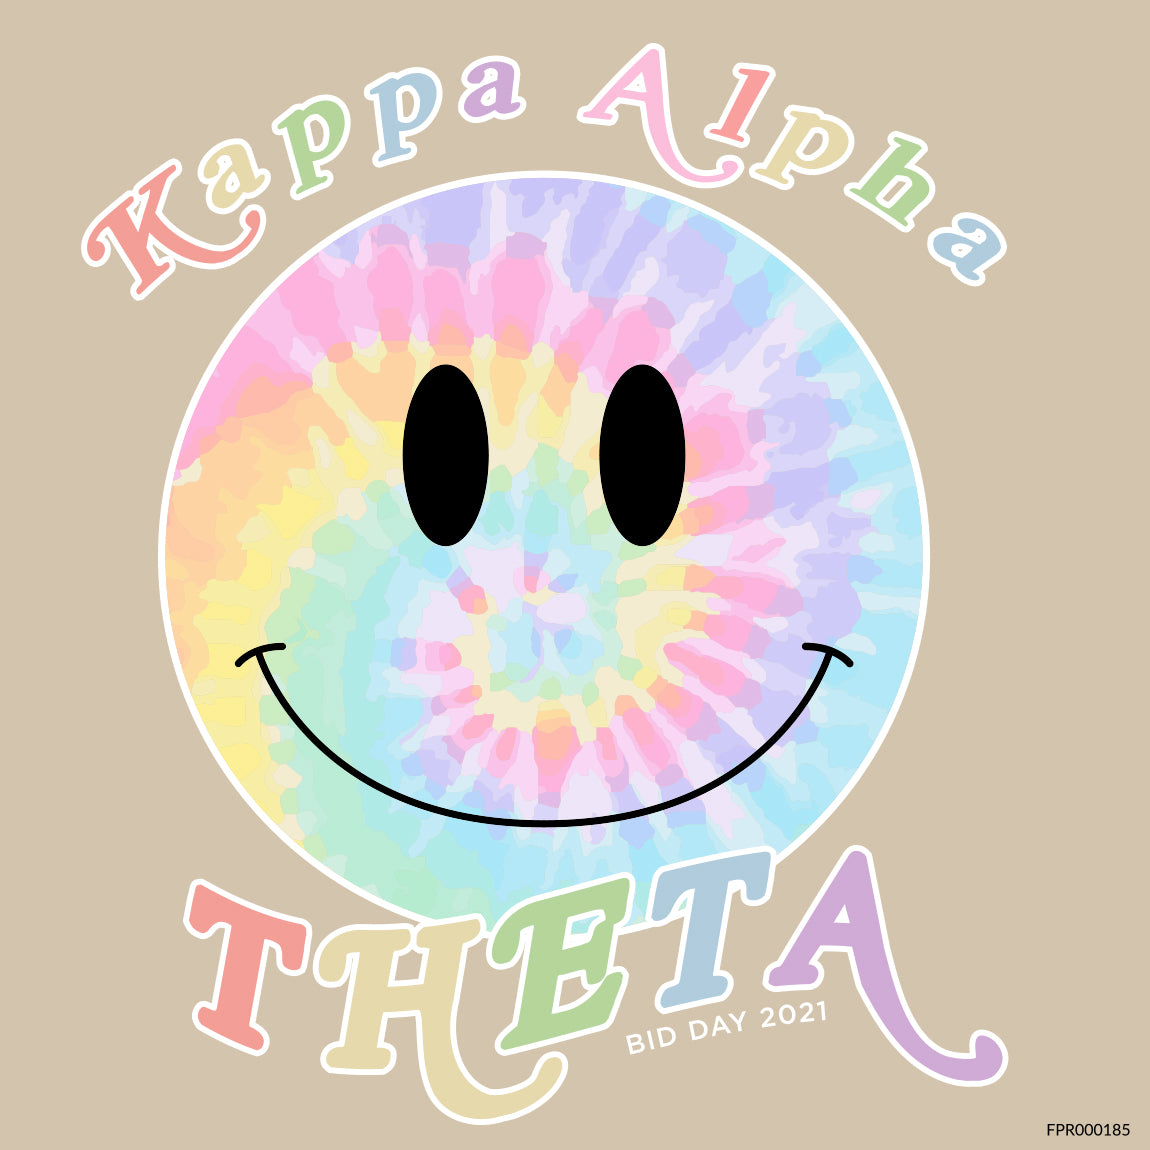 Theta, Kappa Alpha Theta